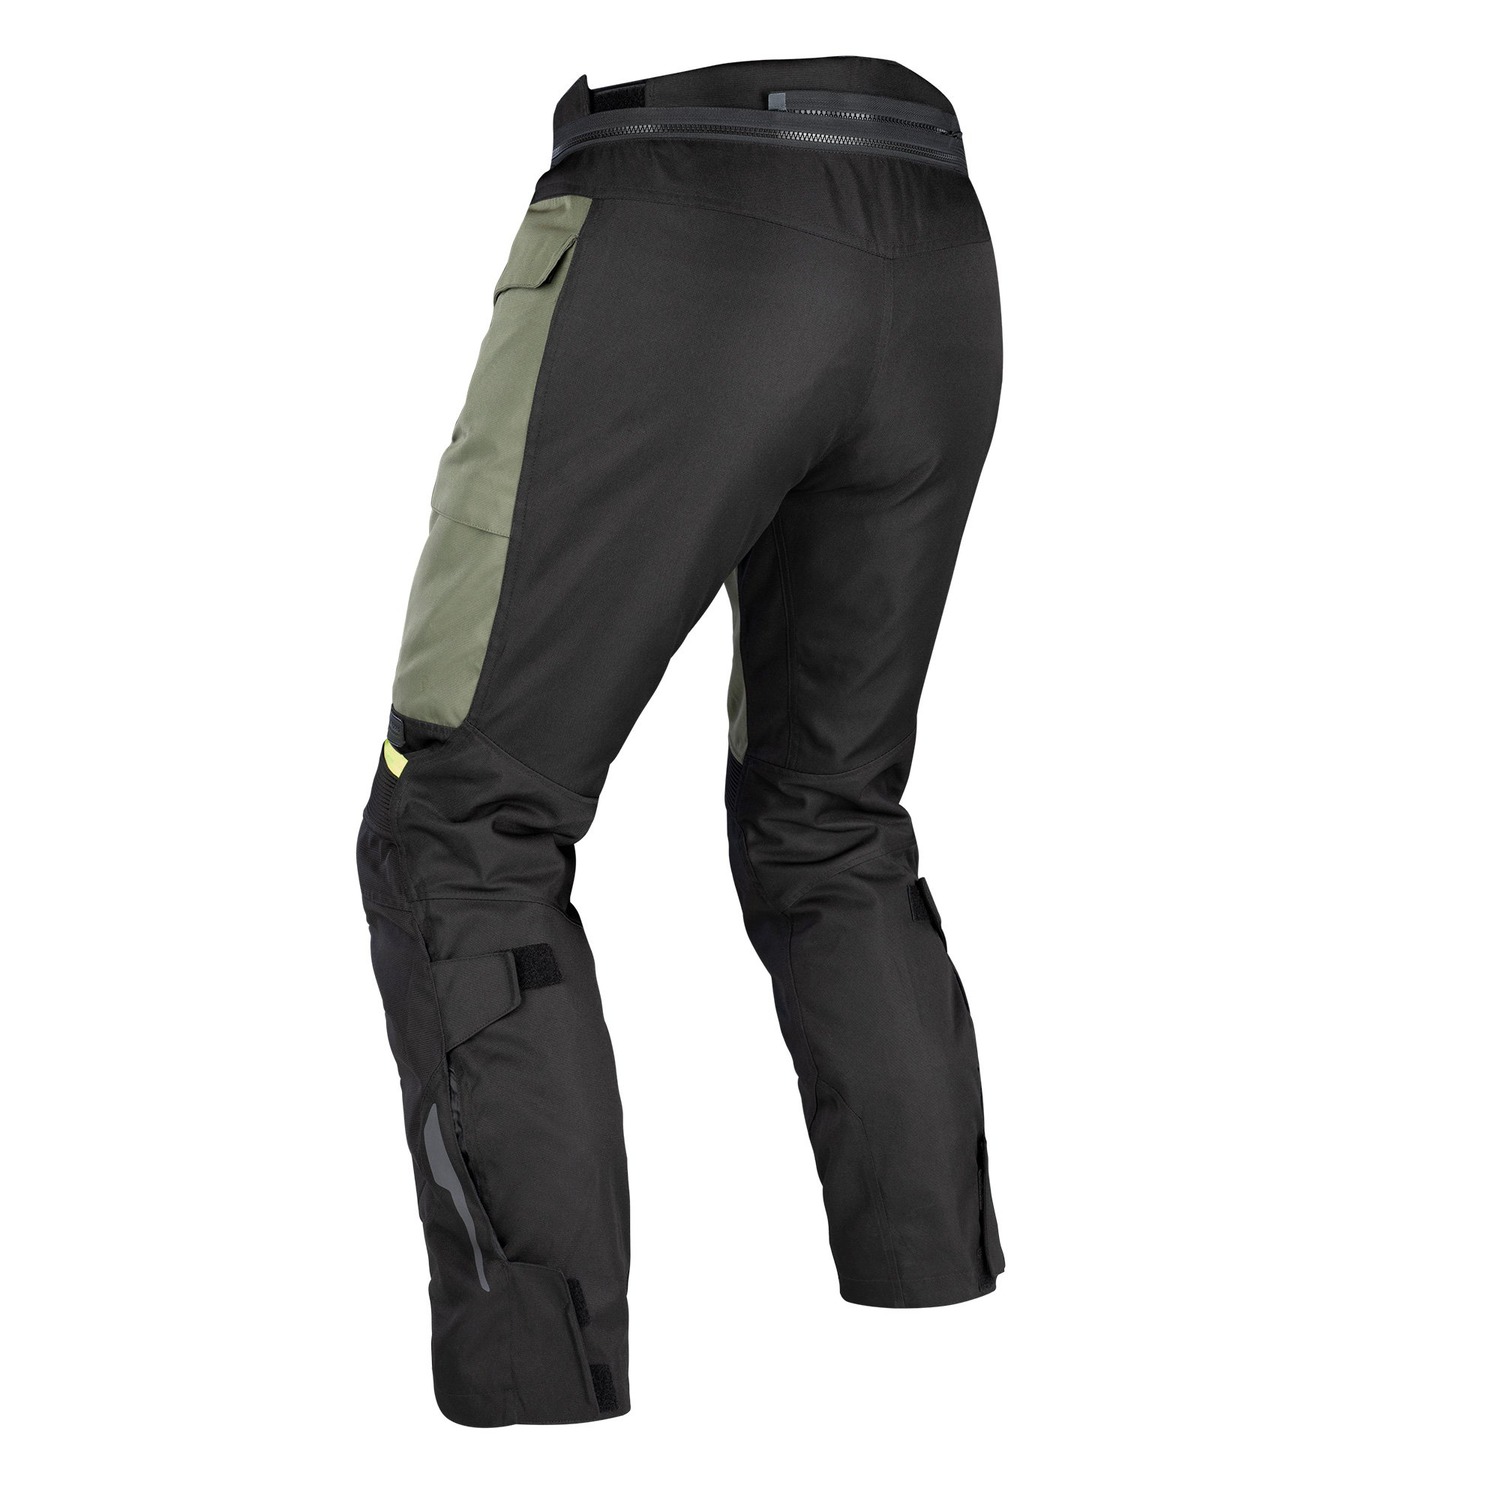 Obrázek produktu kalhoty ROCKLAND DRY2DRY™, OXFORD ADVANCED (zelené khaki/černé/žluté fluo)